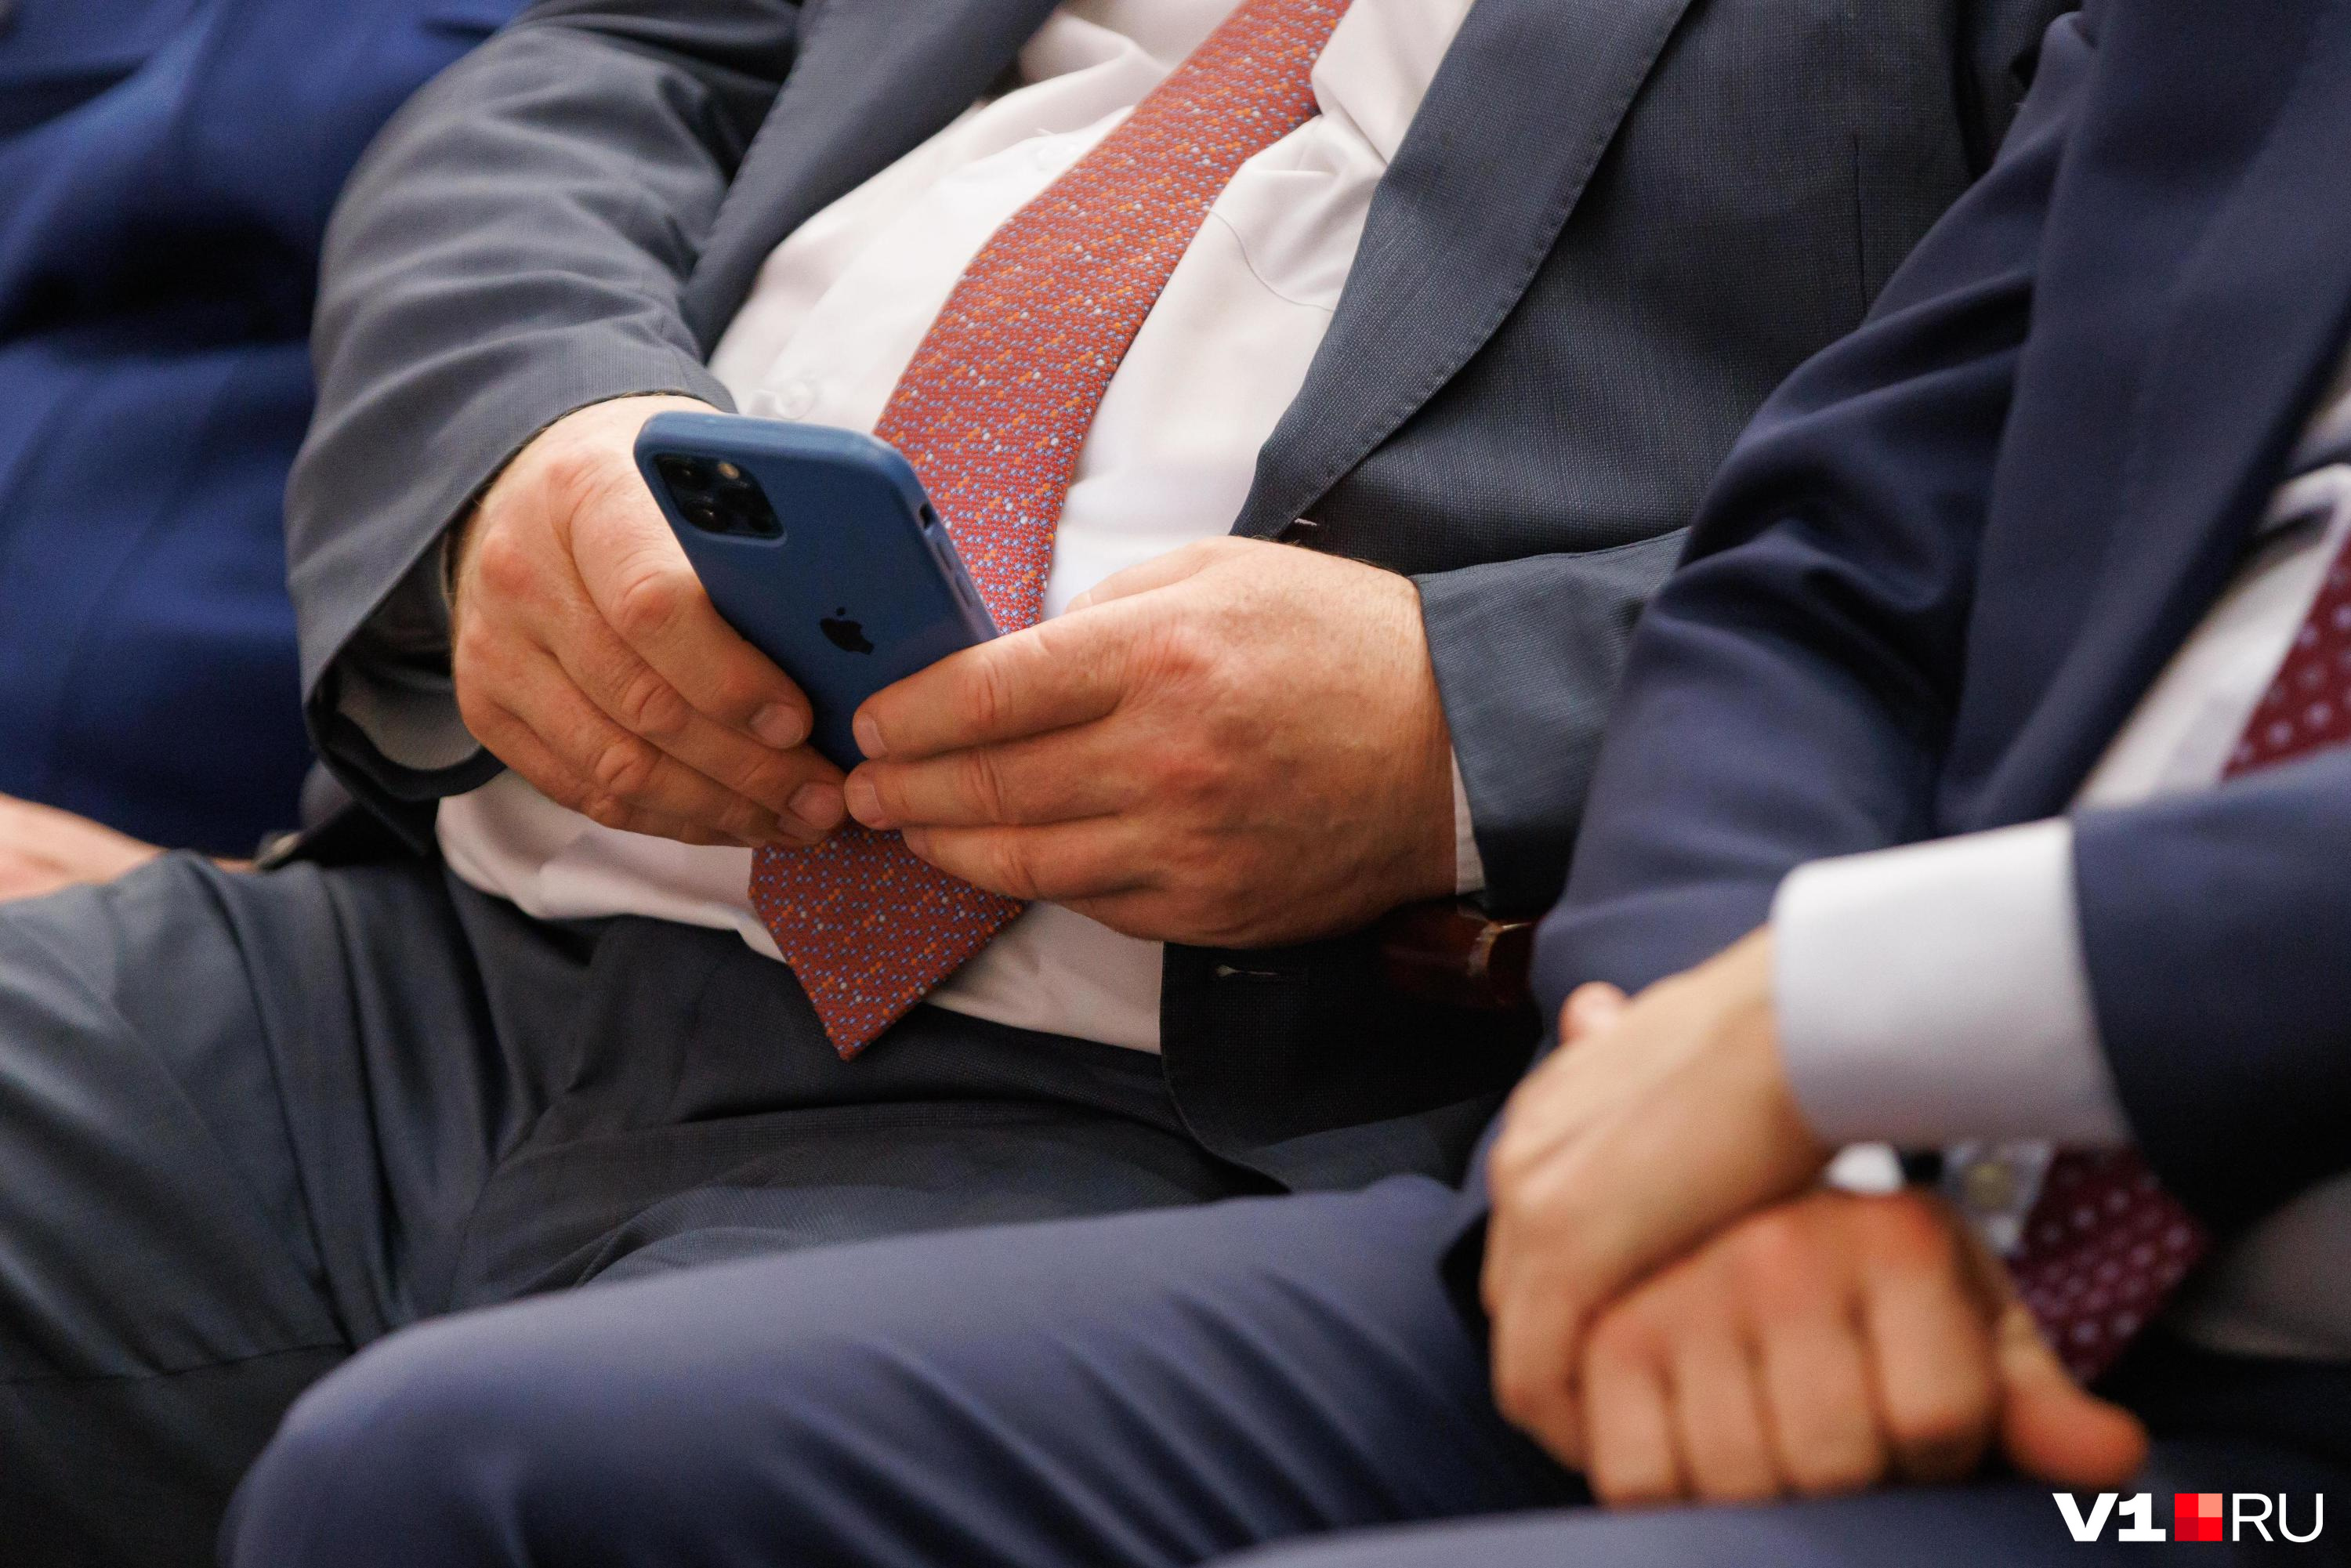 Депутат Госдумы заявил, что Google и Apple могут отключить смартфоны россиянам. Это правда?